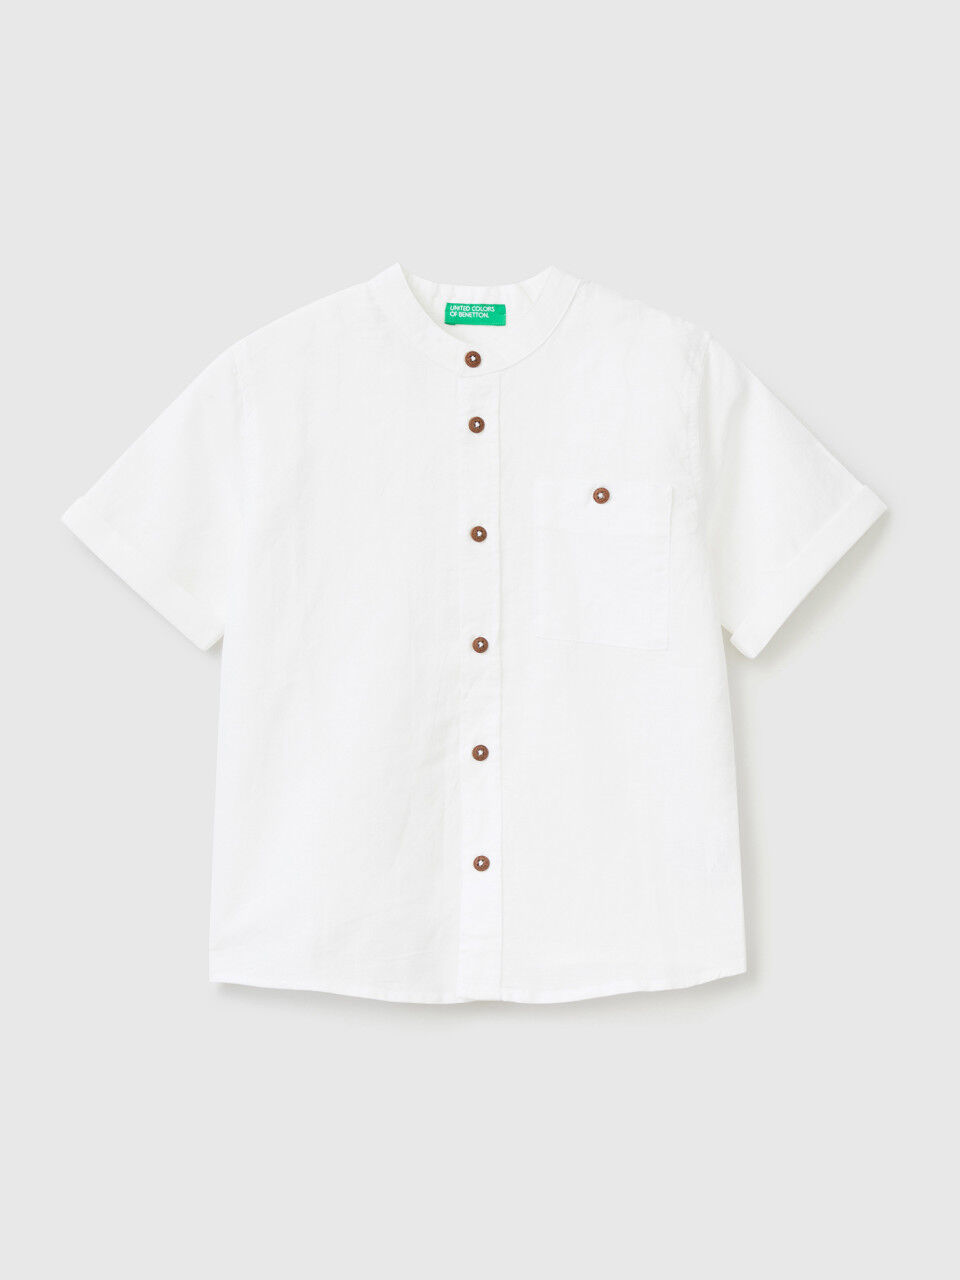 Mandarin collar shirt in linen blend